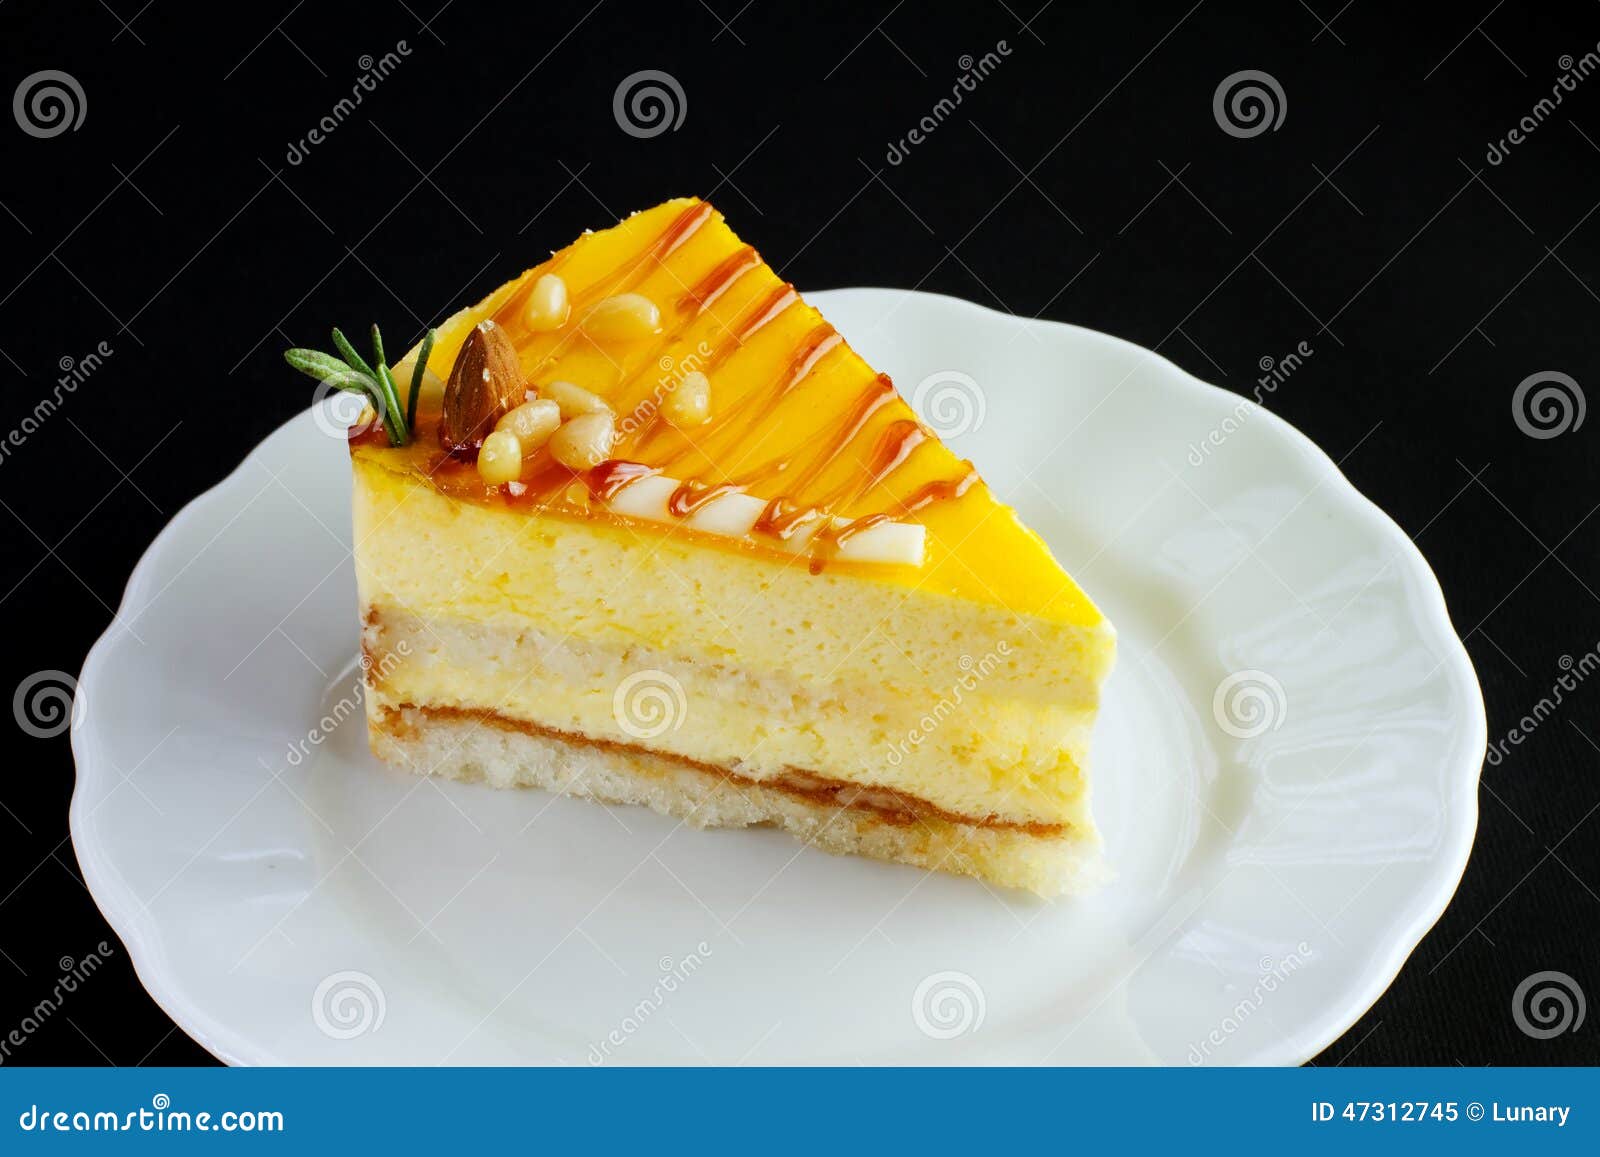 Slice of Delicious Mango Cake Stock Image - Image of bakery ...